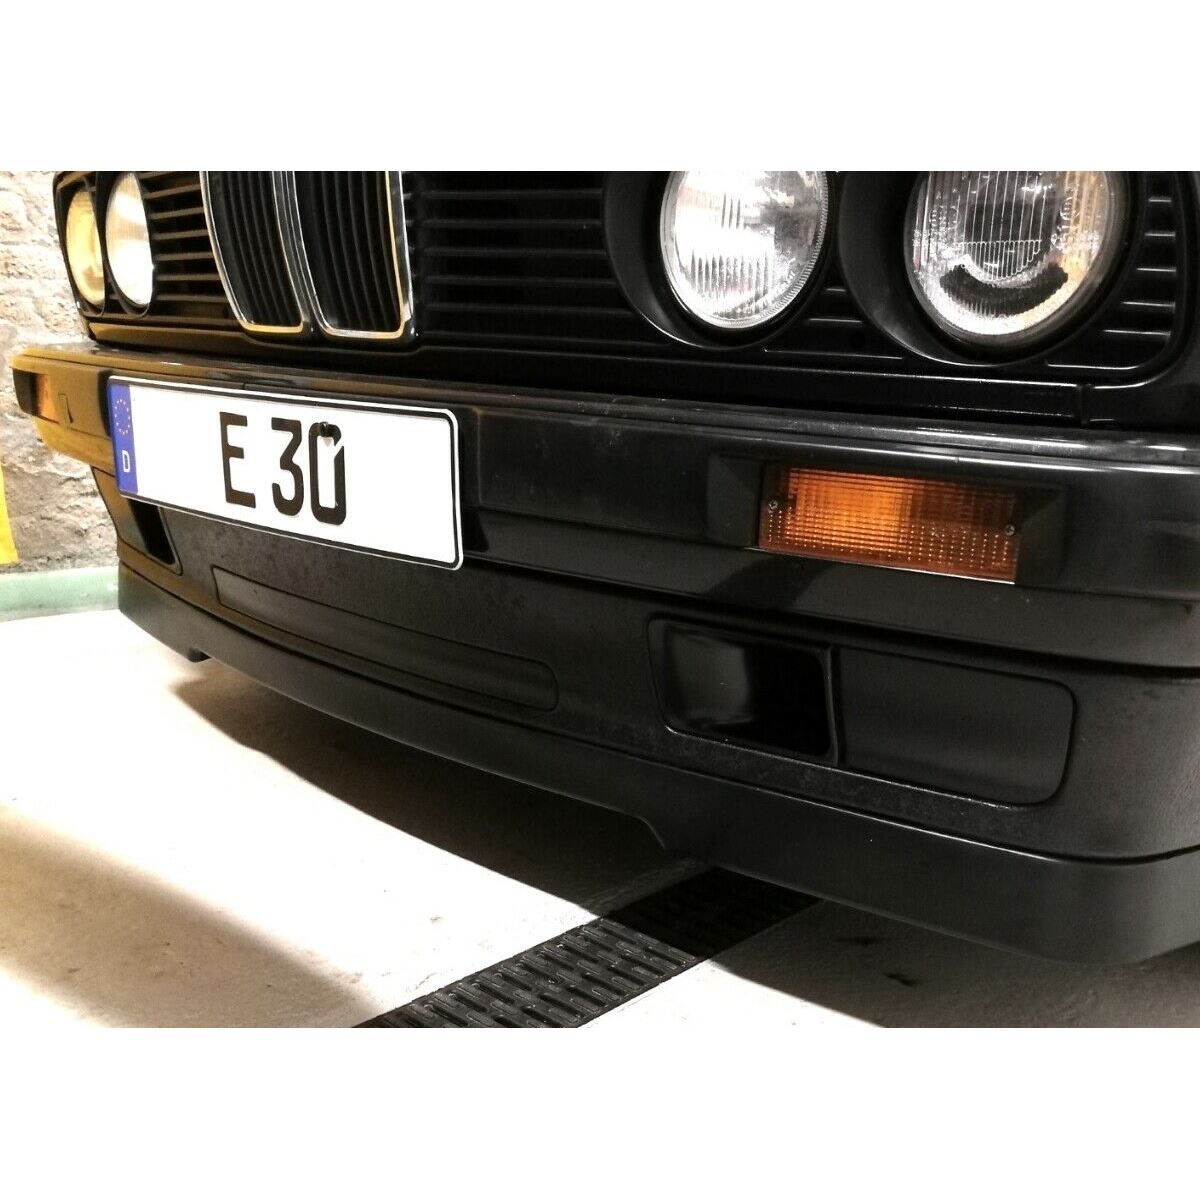 SPOILER DOKŁADKA PRZEDNIA BMW E30